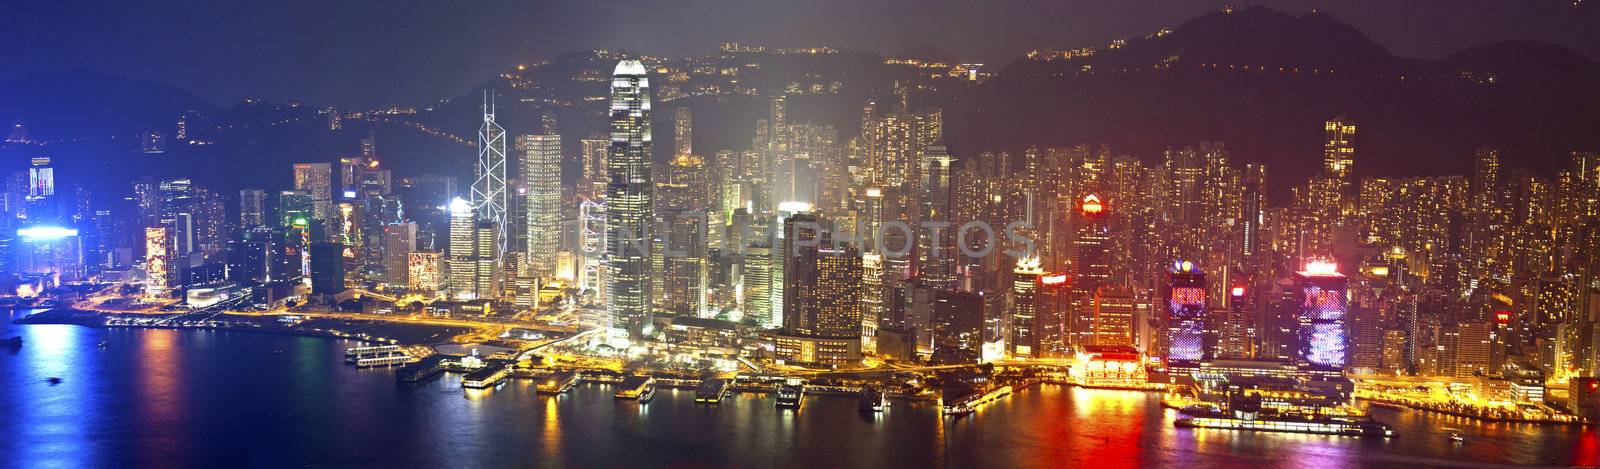 Hong Kong at night on Christmas by kawing921